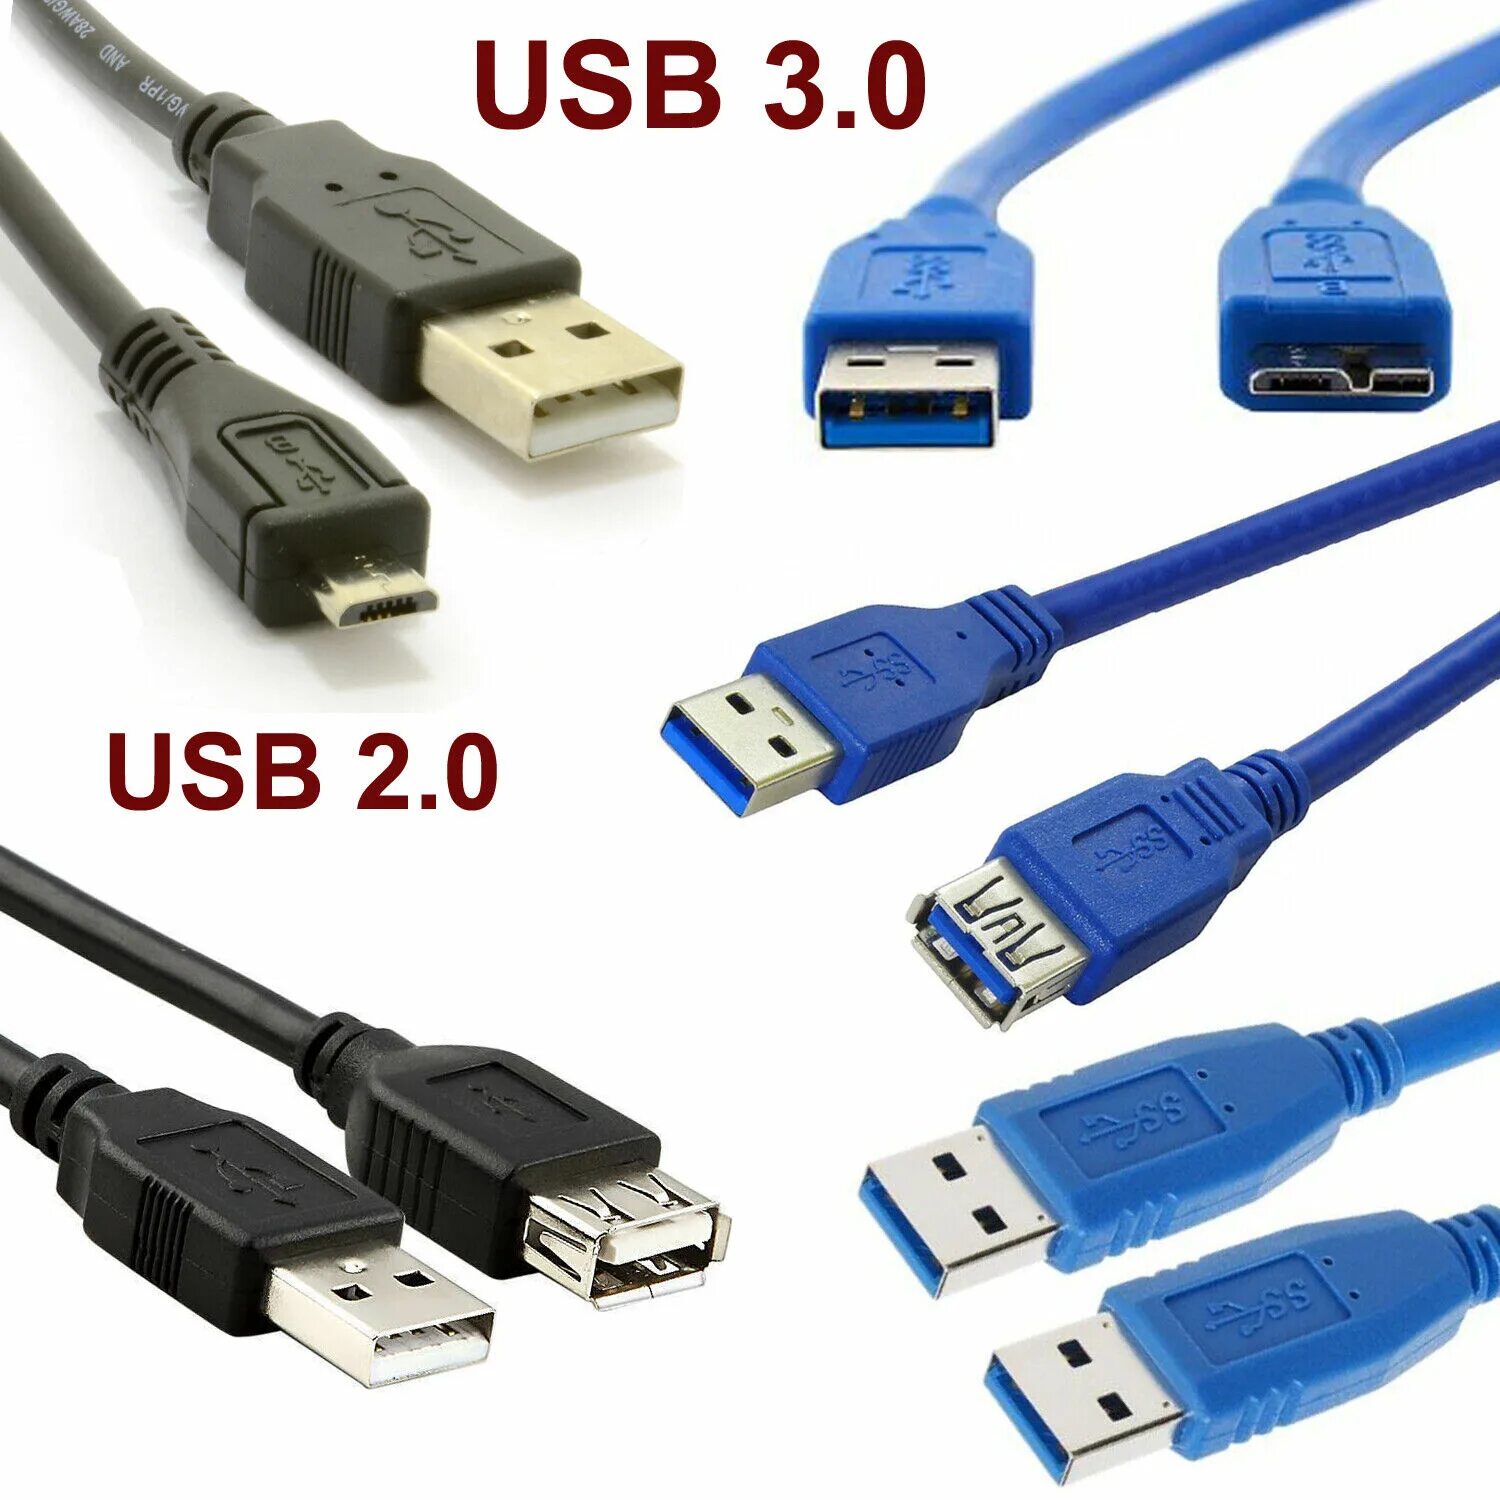 УСБ 3ю1. Юсб 2.0 и 3.0. USB 3.0 И USB 2.0. Кабель удлинитель юсб 2.0. Как отличить usb